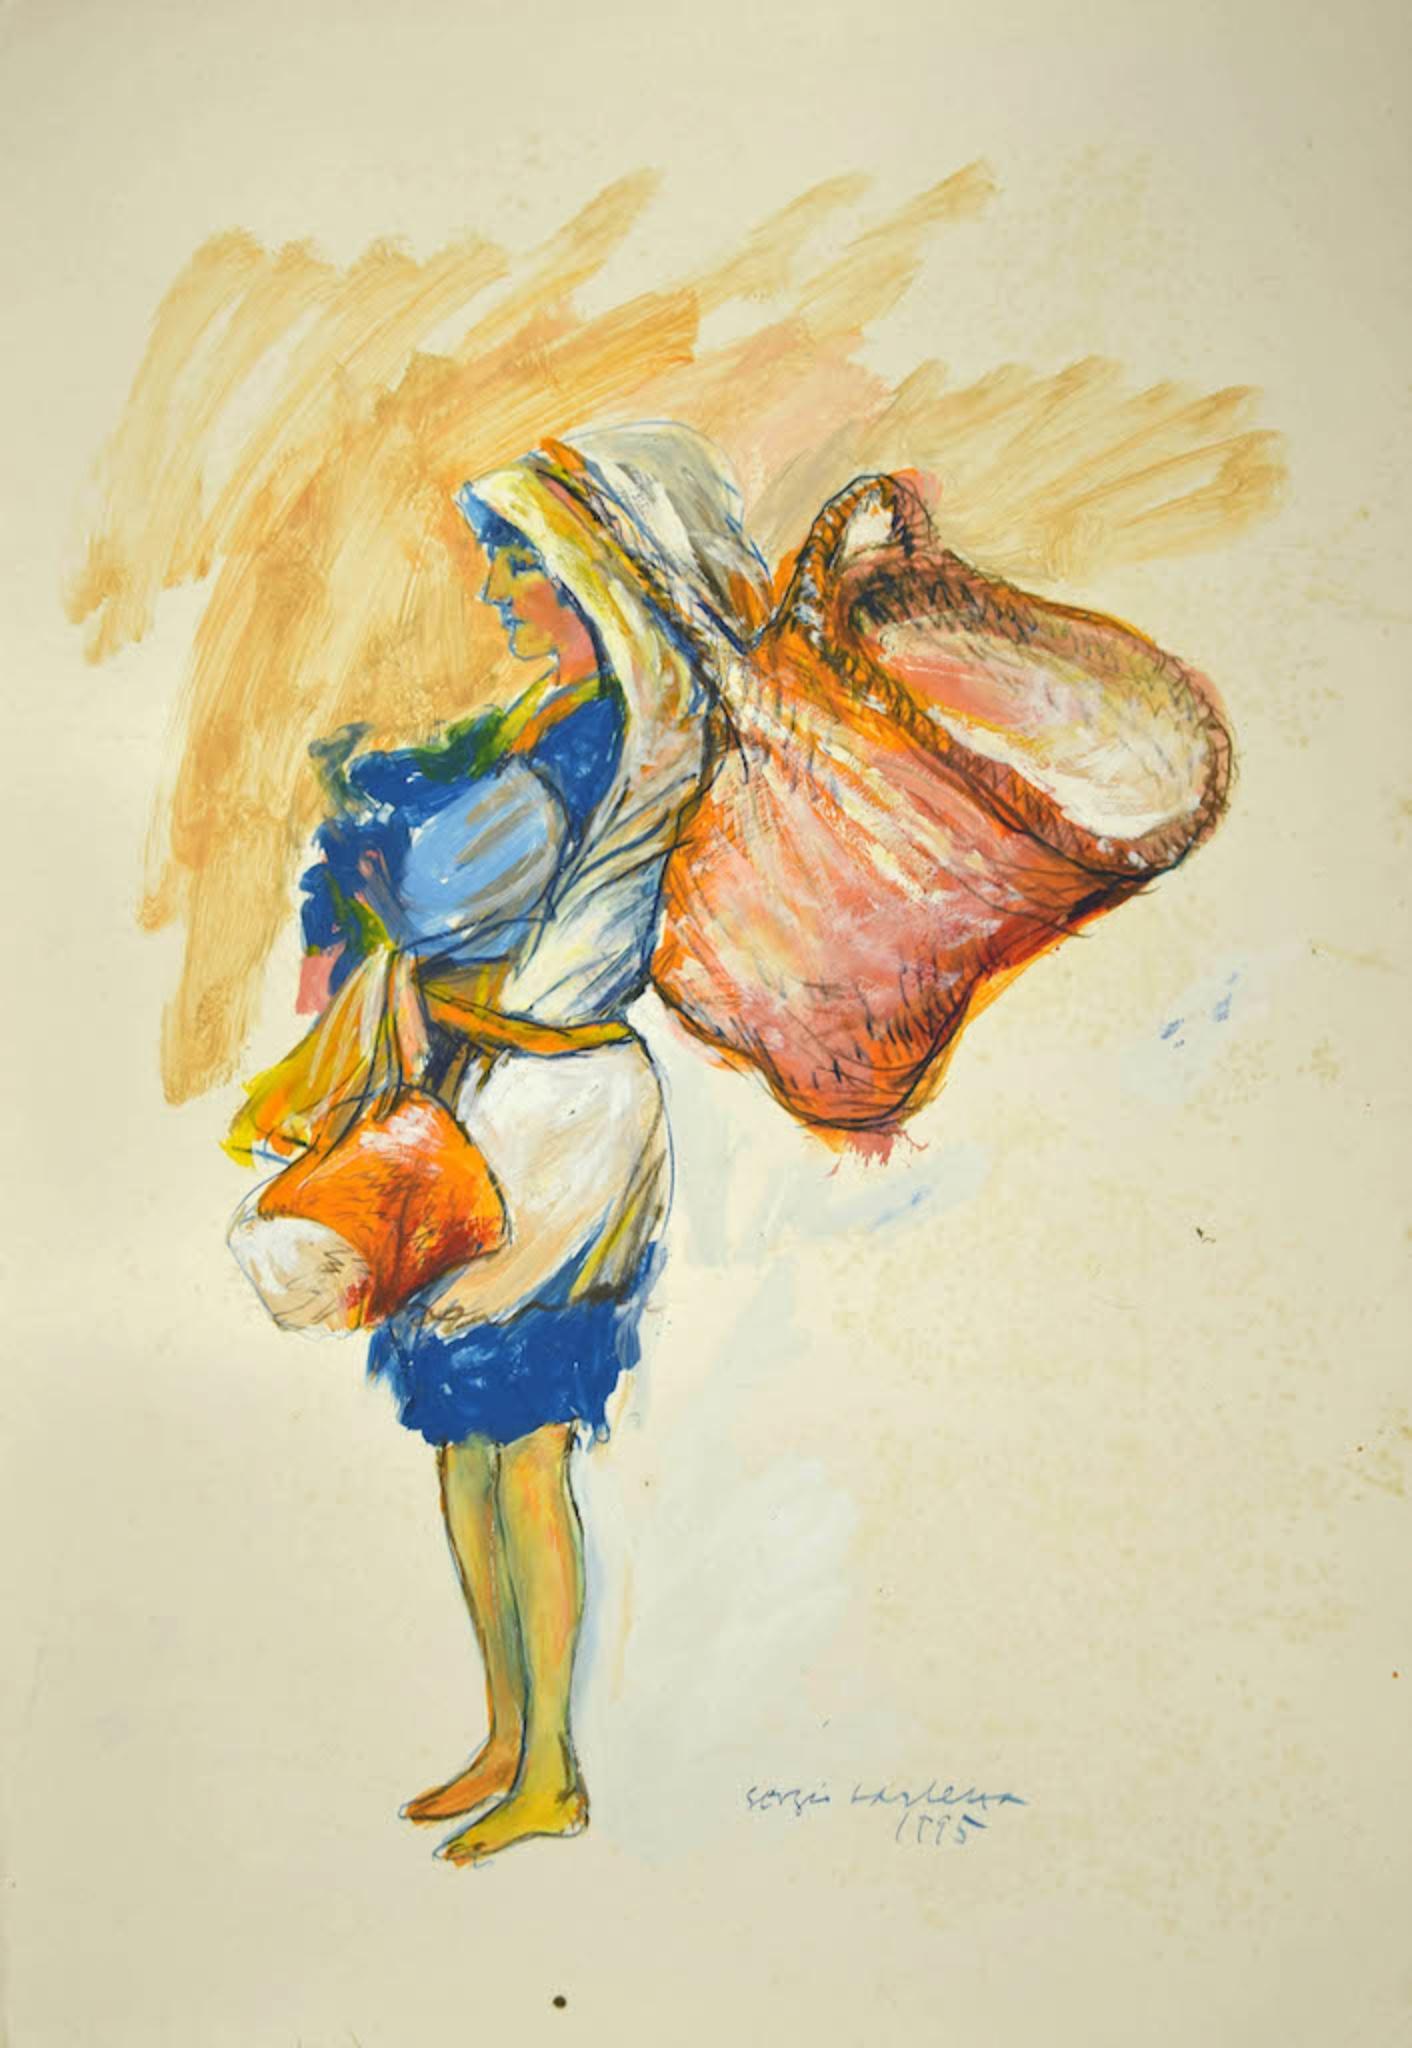 Femme aux paniers est une peinture originale en techniques mixtes - encre, tempera et aquarelle - réalisée par Sergio Barletta en 1995.

Signé à la main et daté en bas à droite.

En bon état à l'exception de quelques plis et d'un morceau de papier